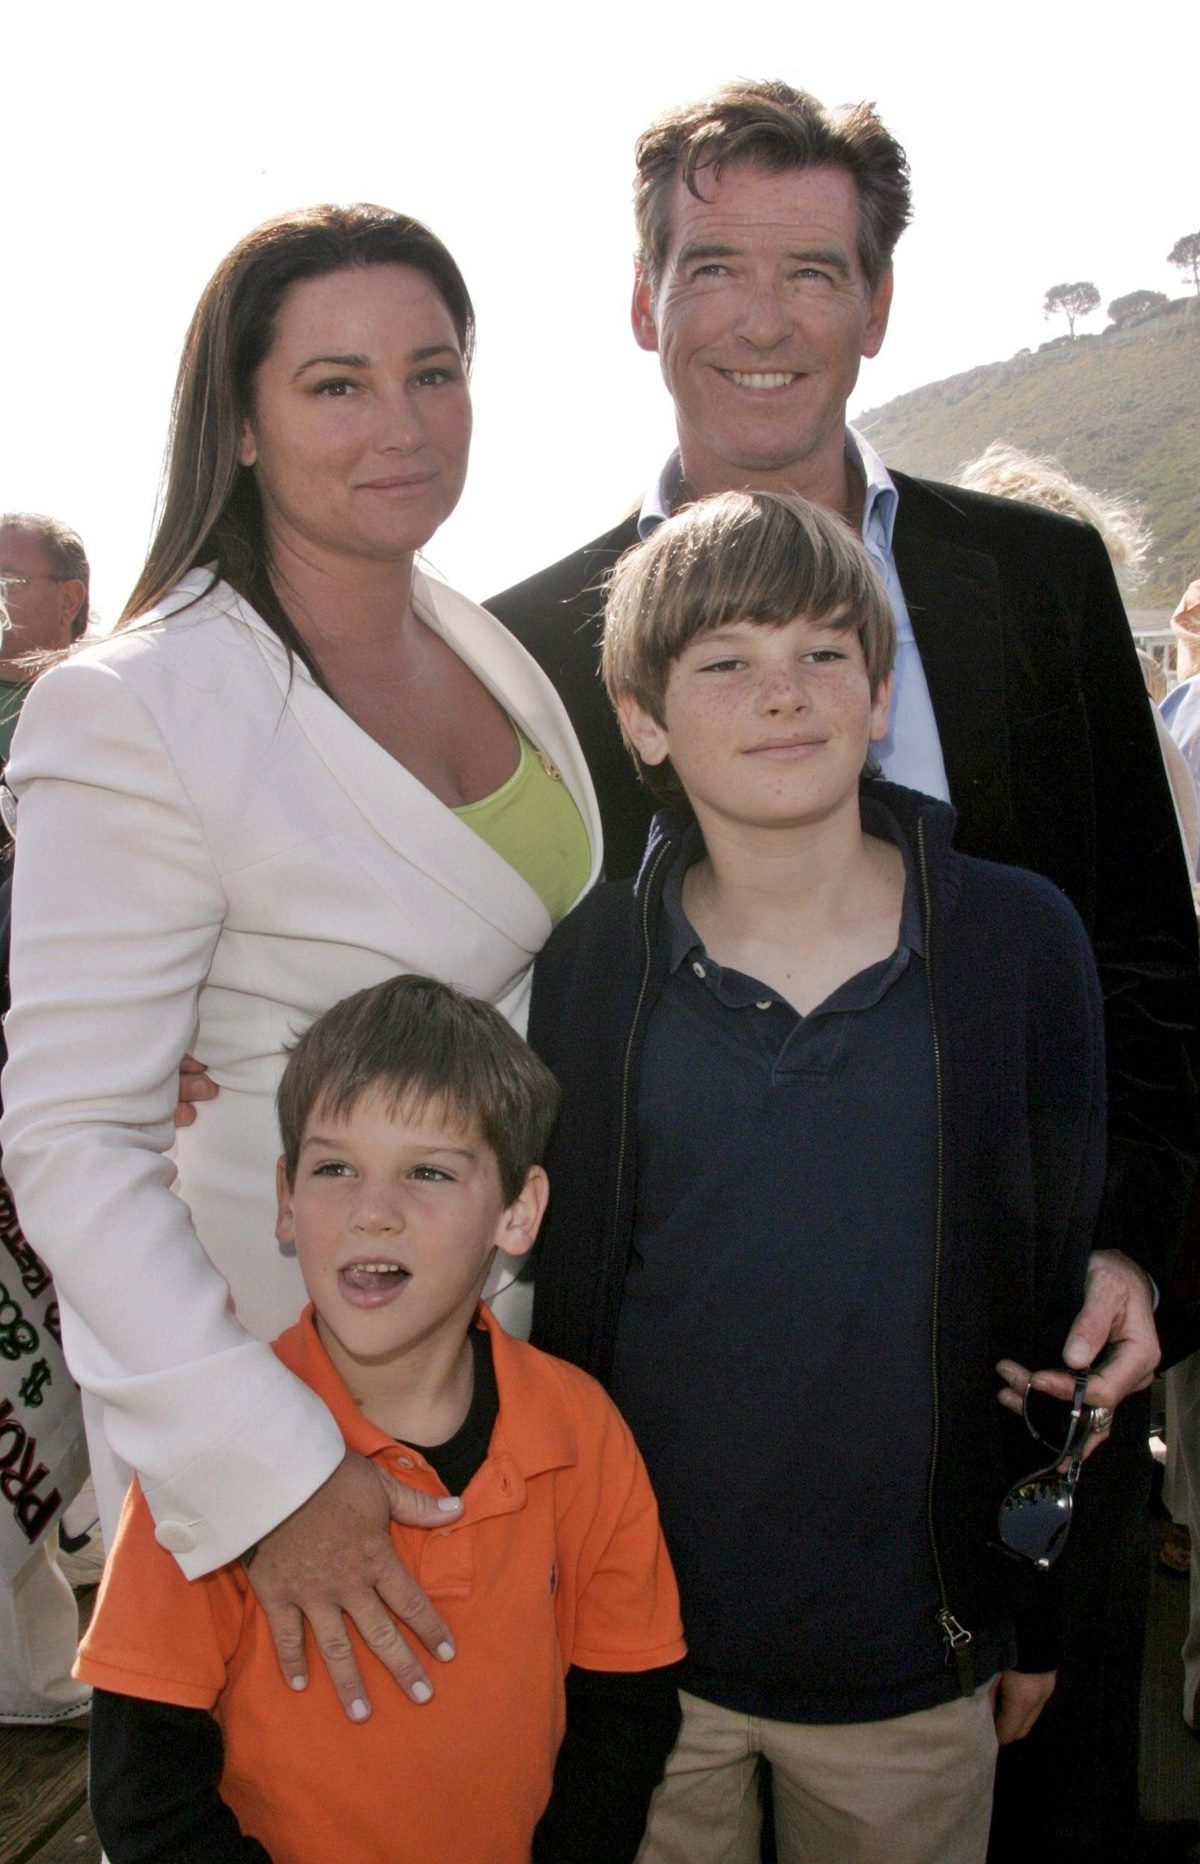 Pierce Brosnan egyedül nevelte fel gyermekeit, miután felesége tragikus módon életét vesztette